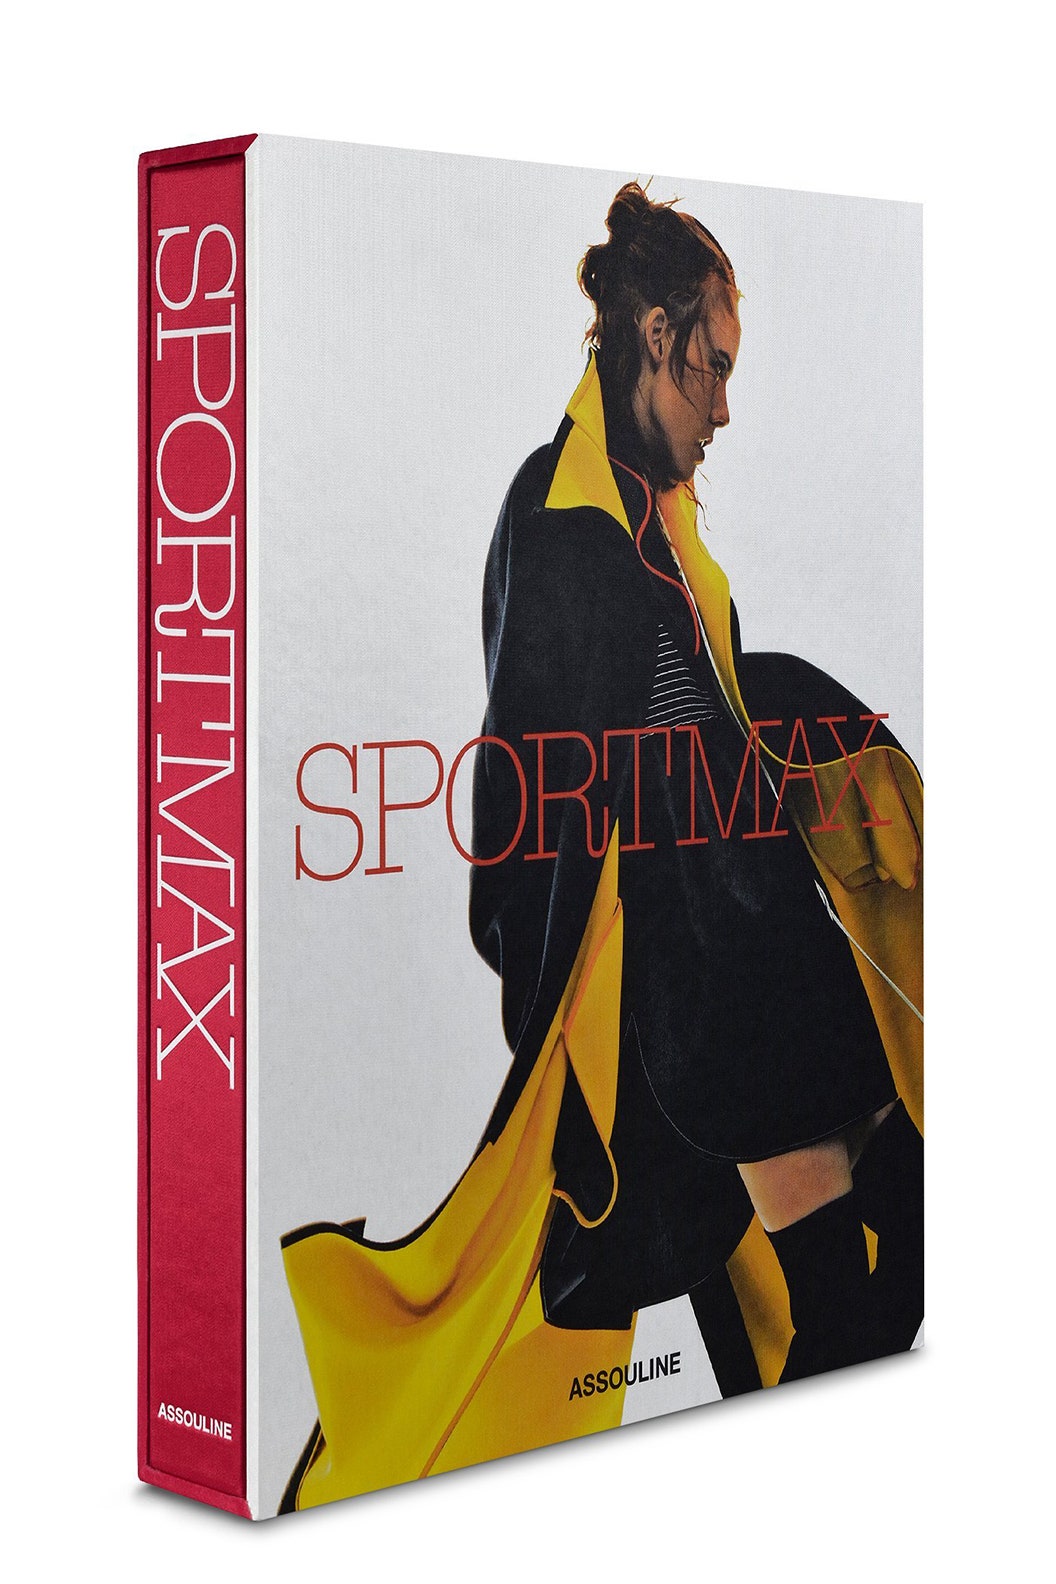 Sportmax отмечают 50летие объемной настольной книгой